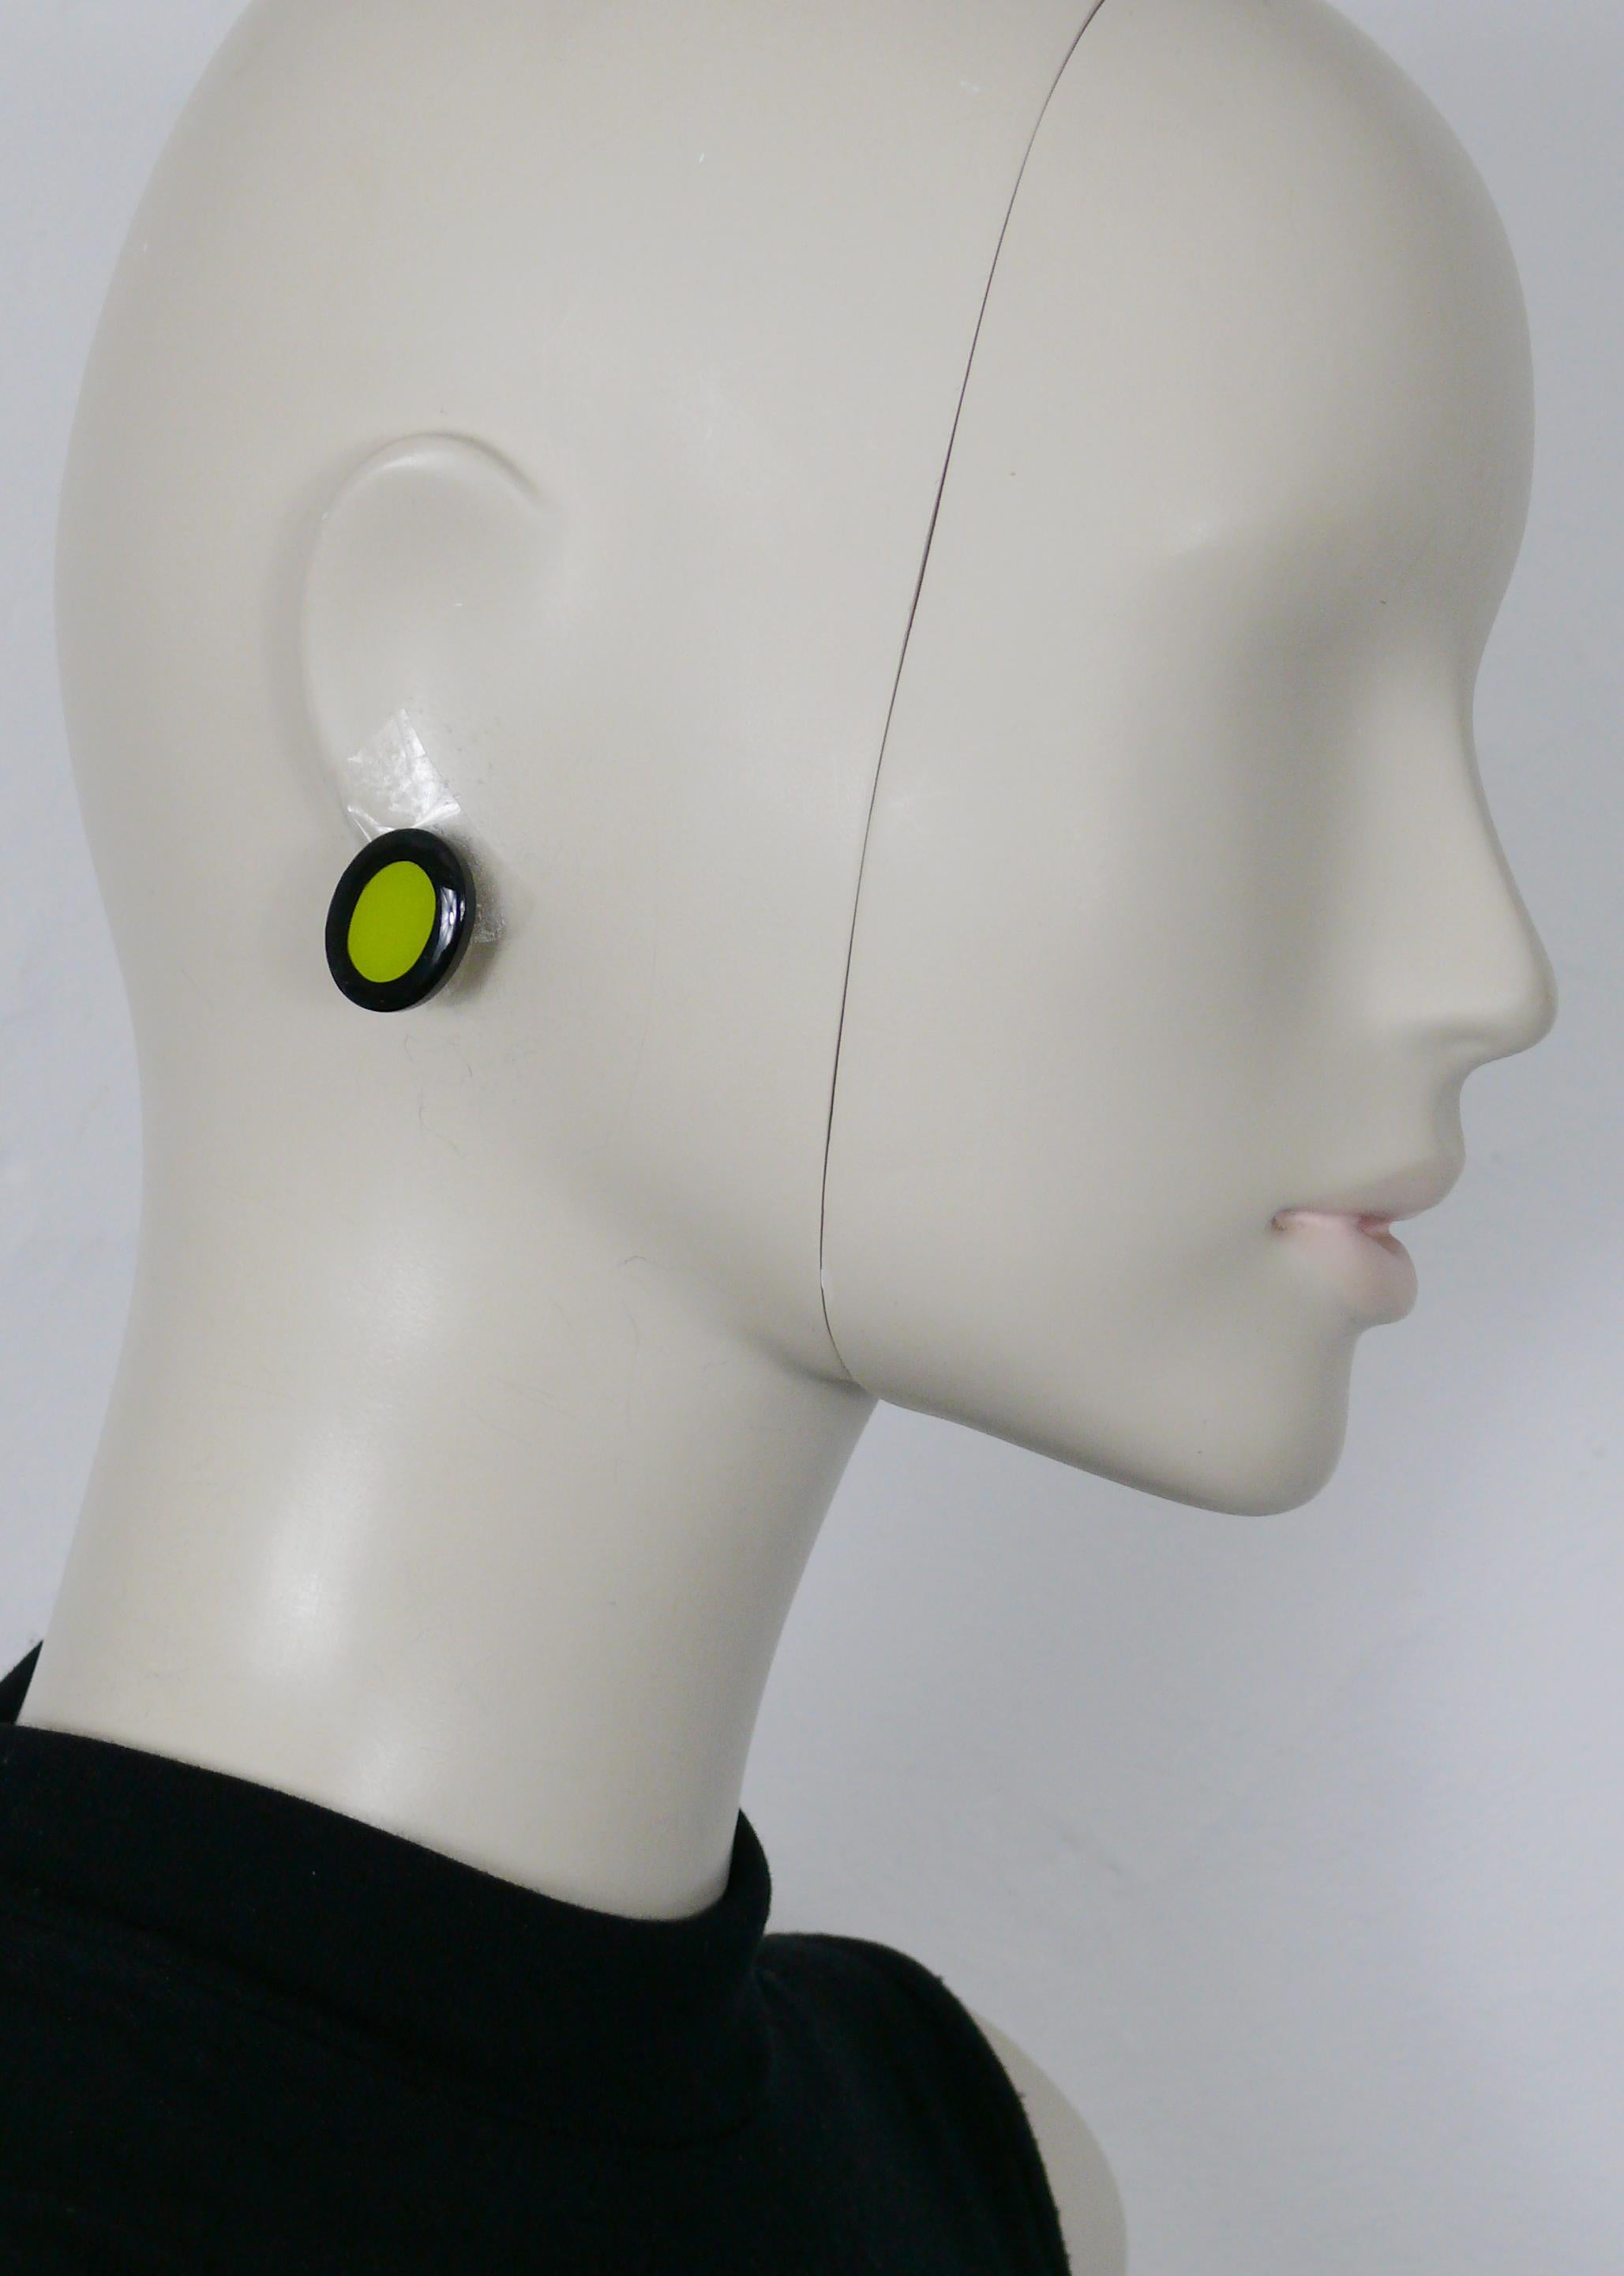 Boucles d'oreilles clip abstraction vintage YVES SAINT LAURENT avec un ovale en résine noire et verte.

Embossé YSL.

Mesures indicatives : hauteur environ 2,2 cm (0,87 inch) / largeur environ 1,8 cm (0,71 inch).

NOTES
- Il s'agit d'un article